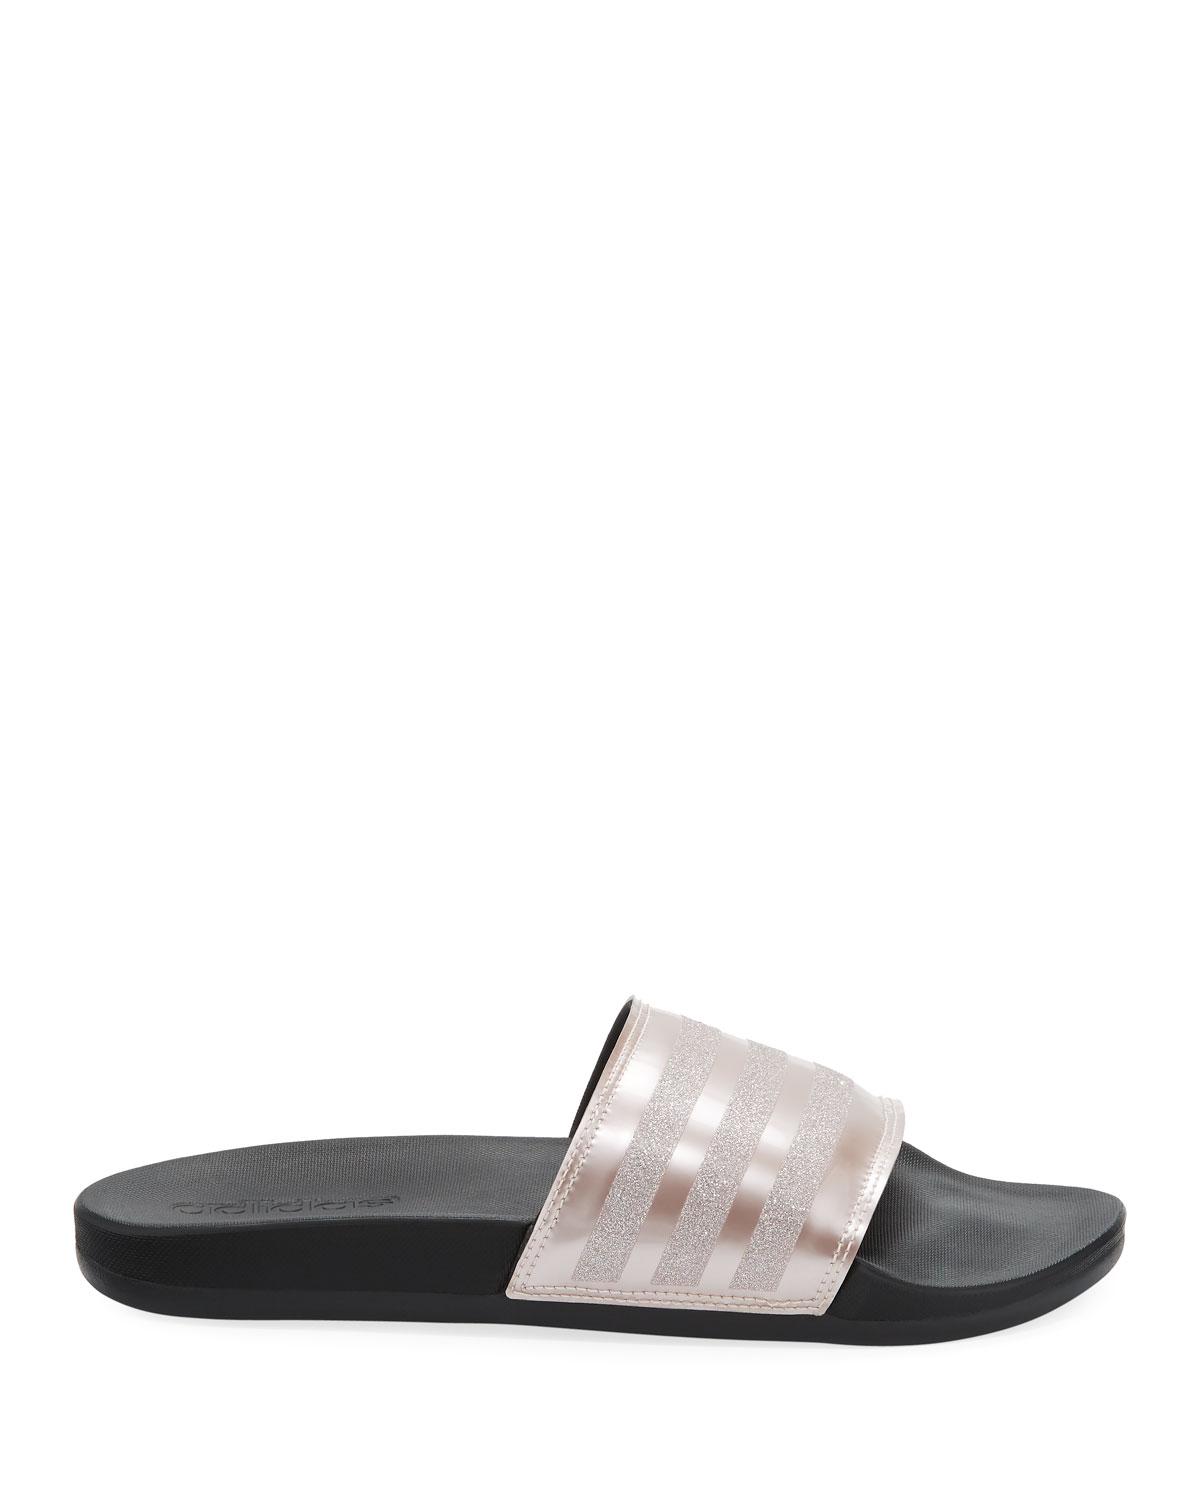  adidas  Leather Adilette  Glitter Comfort  Slide Sandal  Lyst